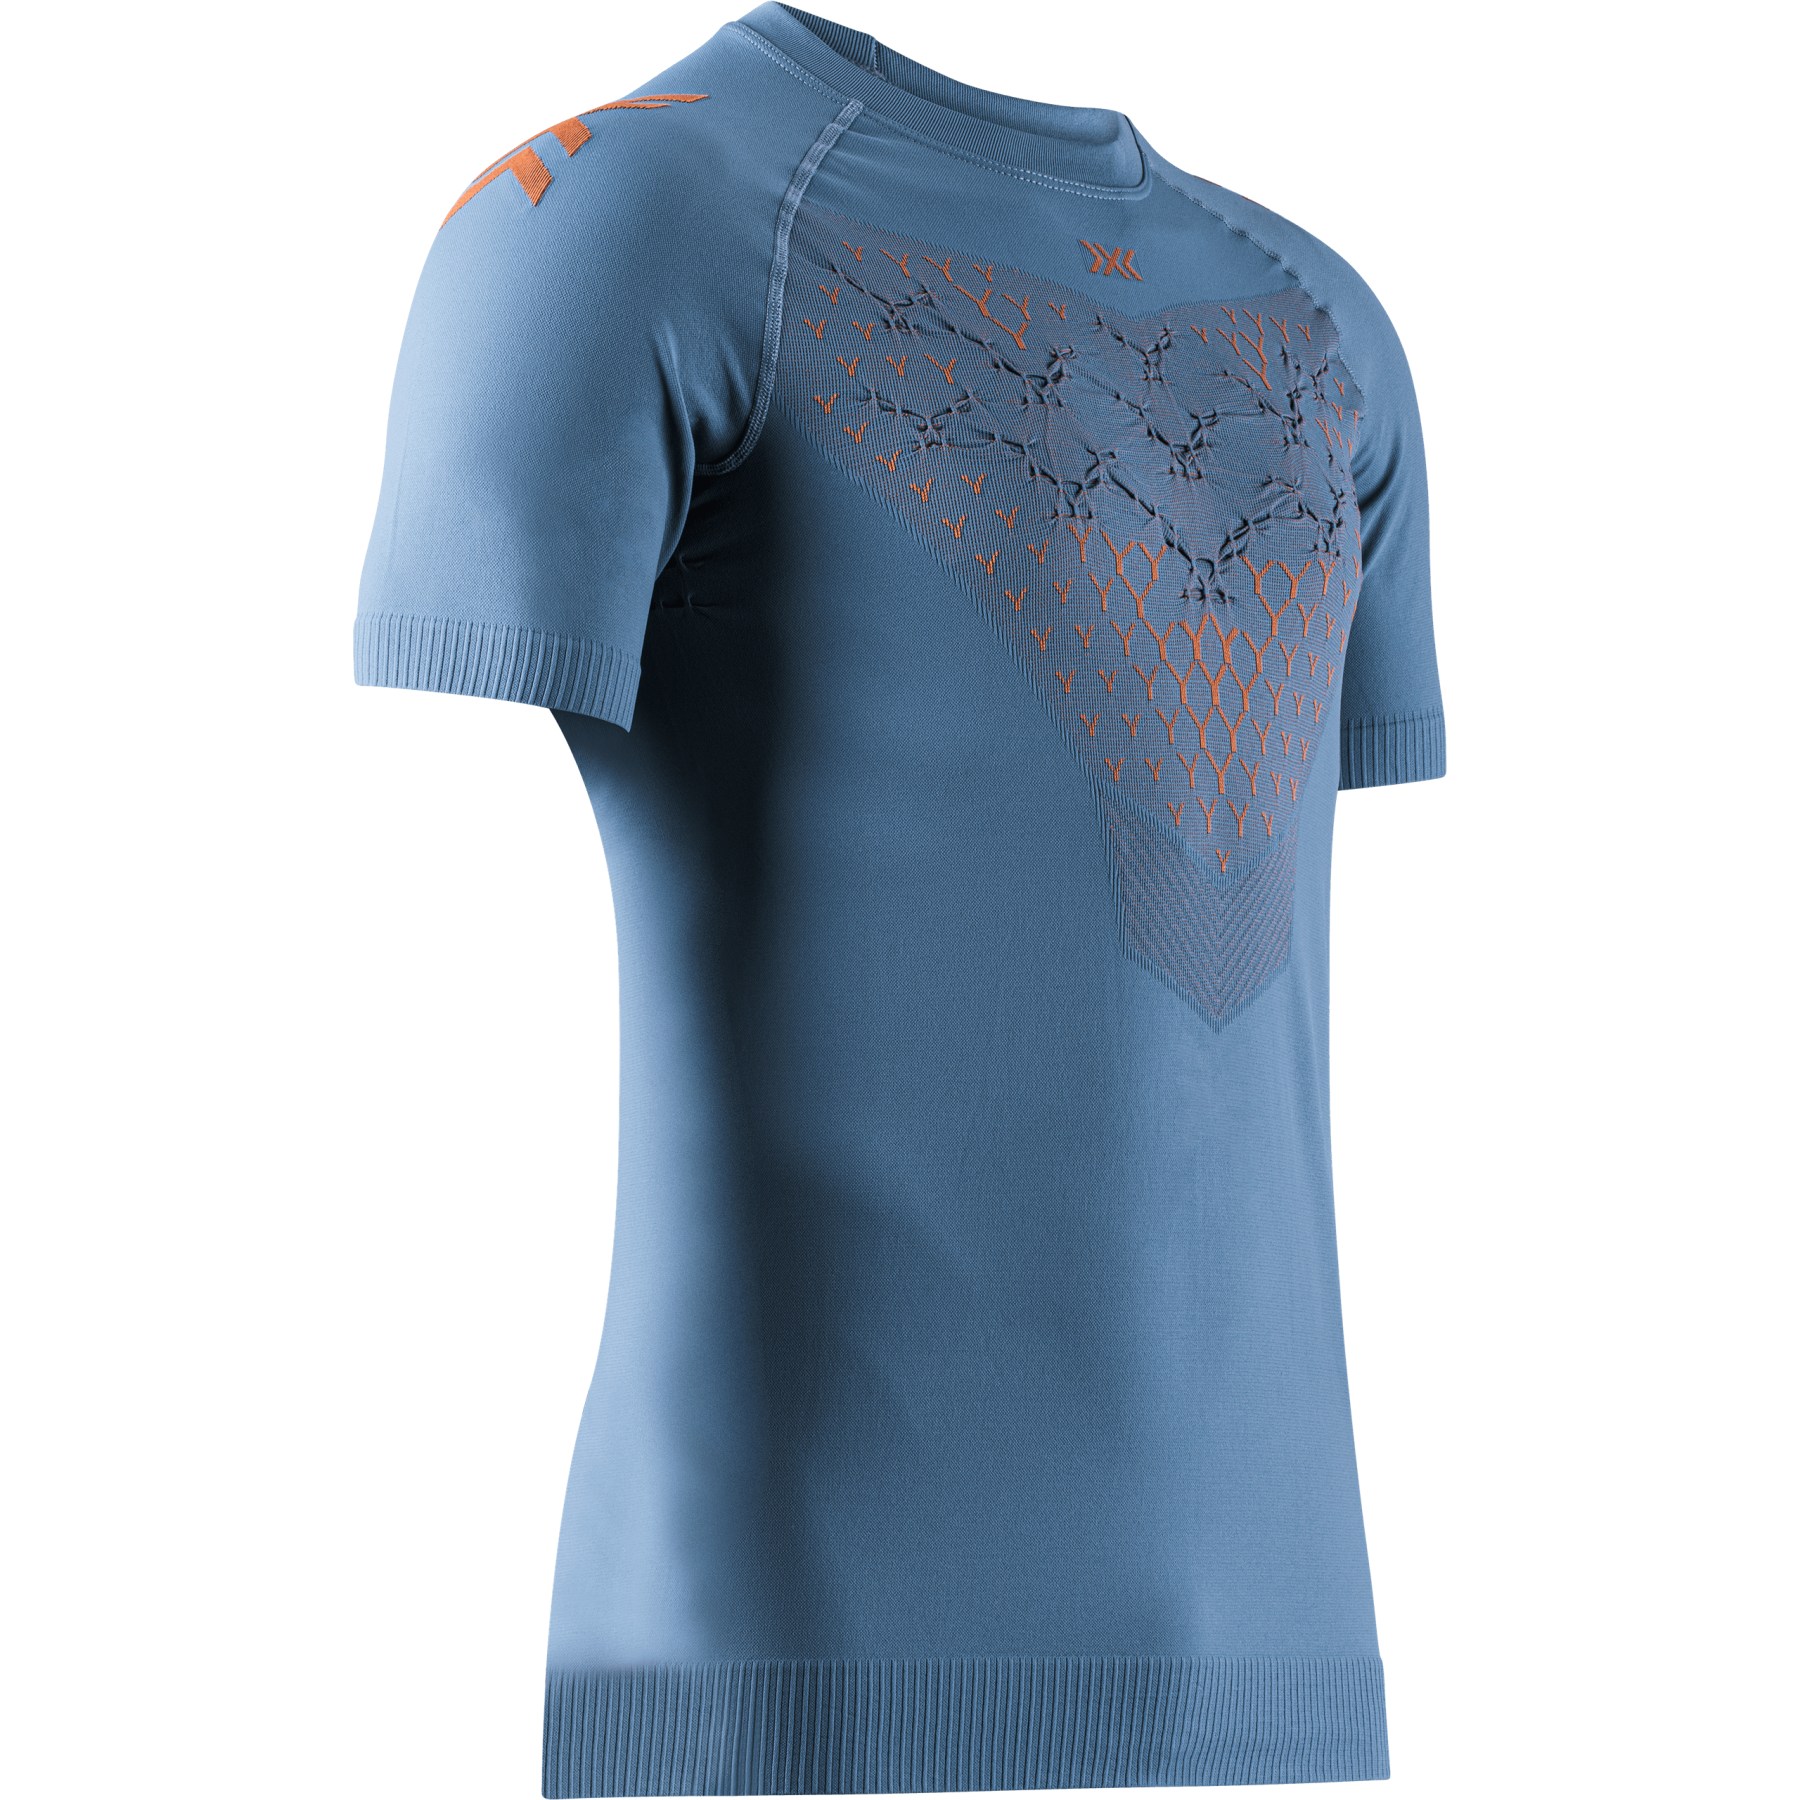 Produktbild von X-Bionic Twyce Laufshirt Herren - mineral blue/orange